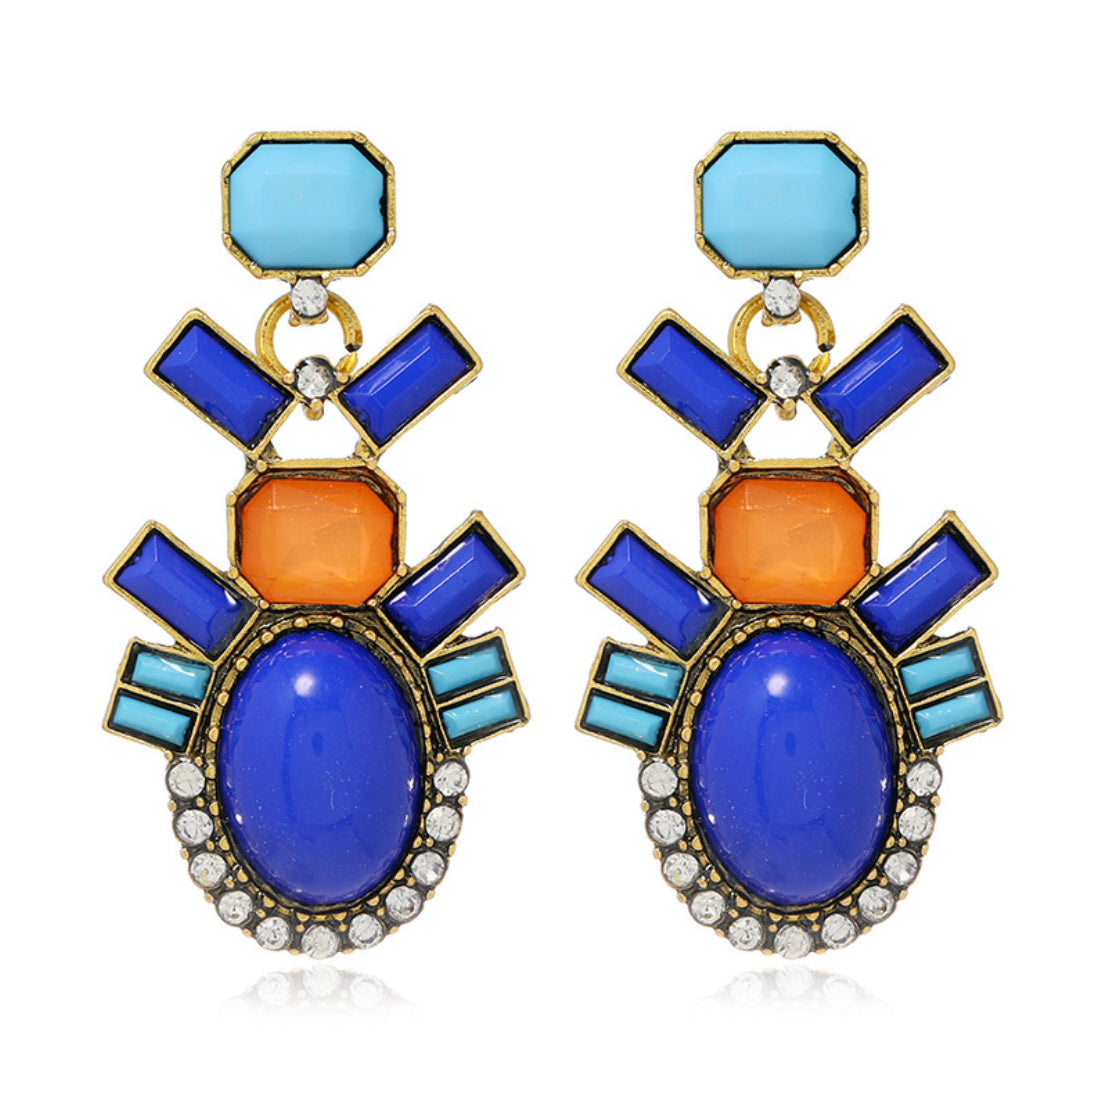 Orange/Blue statement earrings